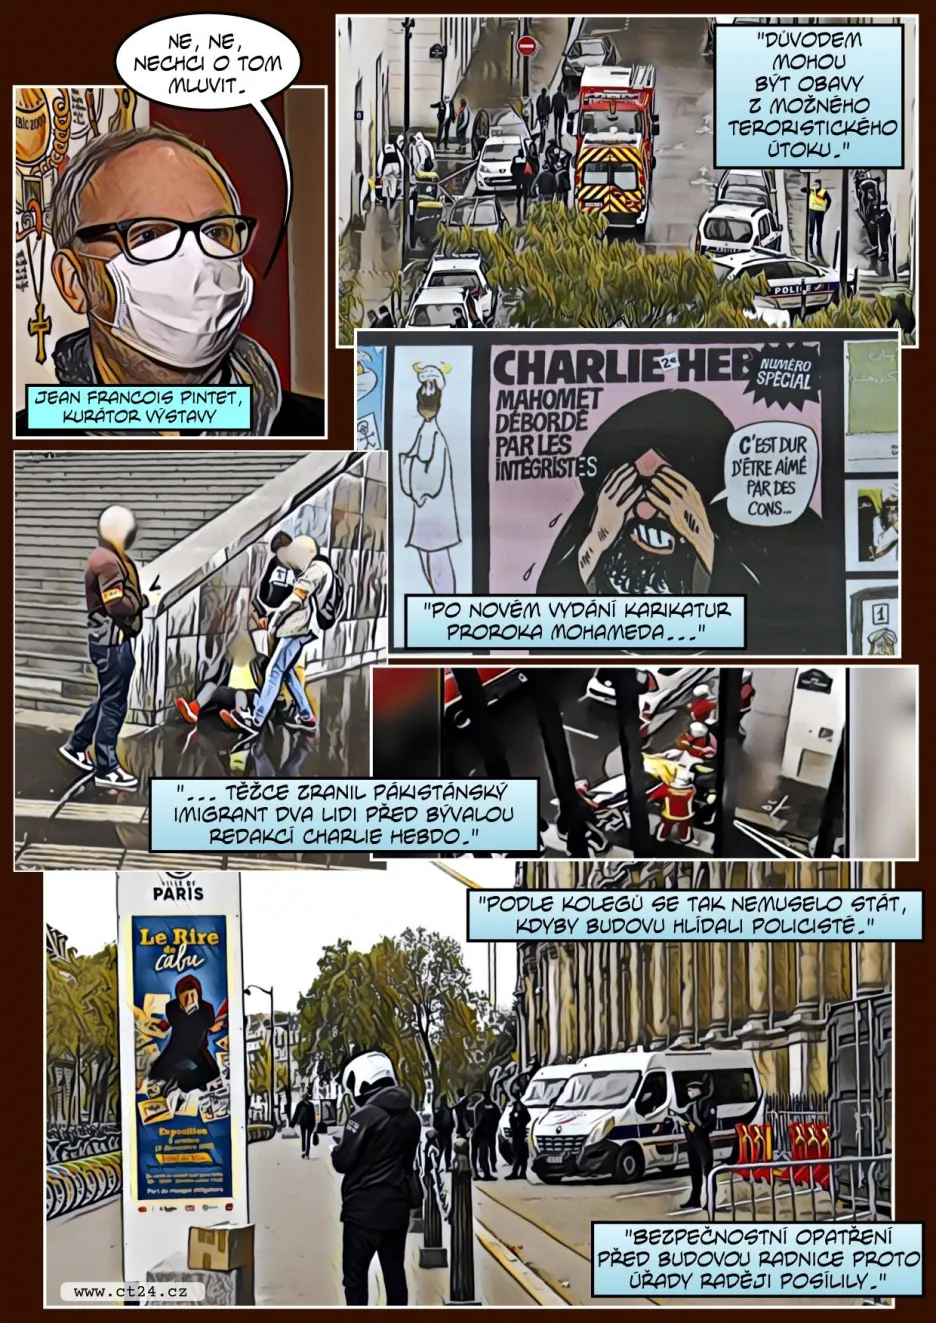 Začala výstava kontroverzního kreslíře Cabuta. Ten nepřežil atentát na redakci Charlie Hebdo